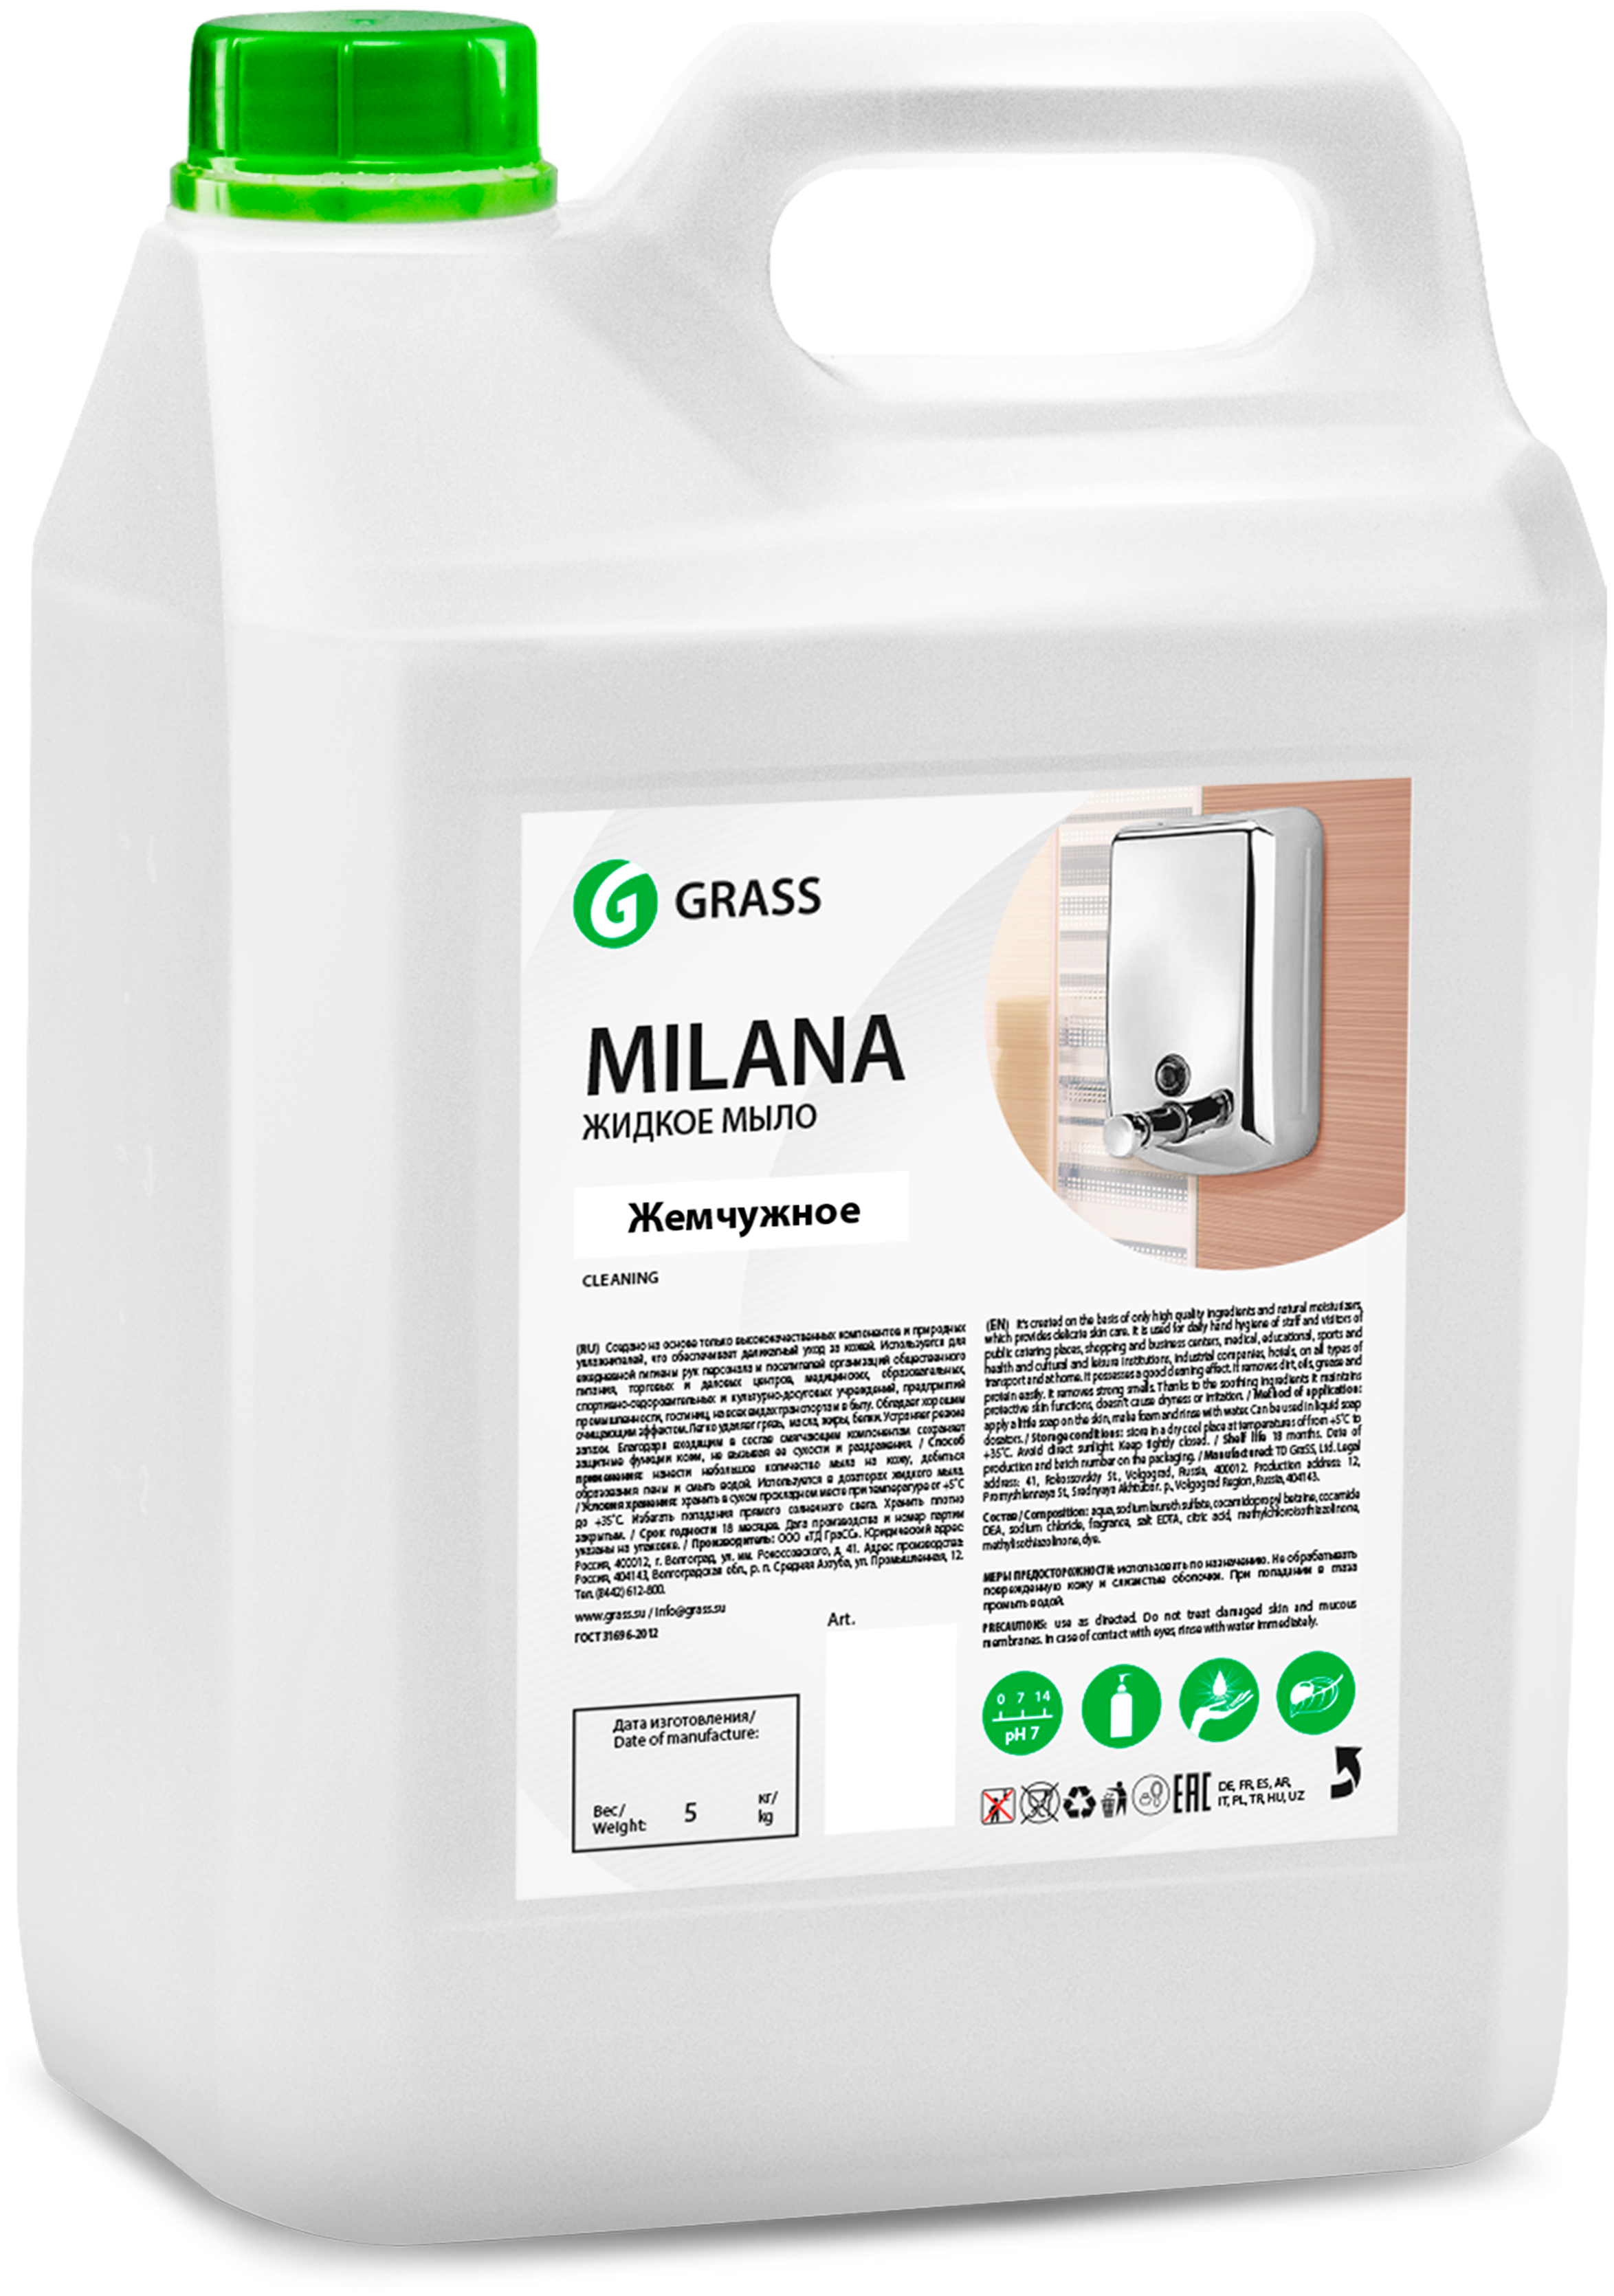 Grass Жидкое крем-мыло Milana жемчужное, канистра 5 кг.